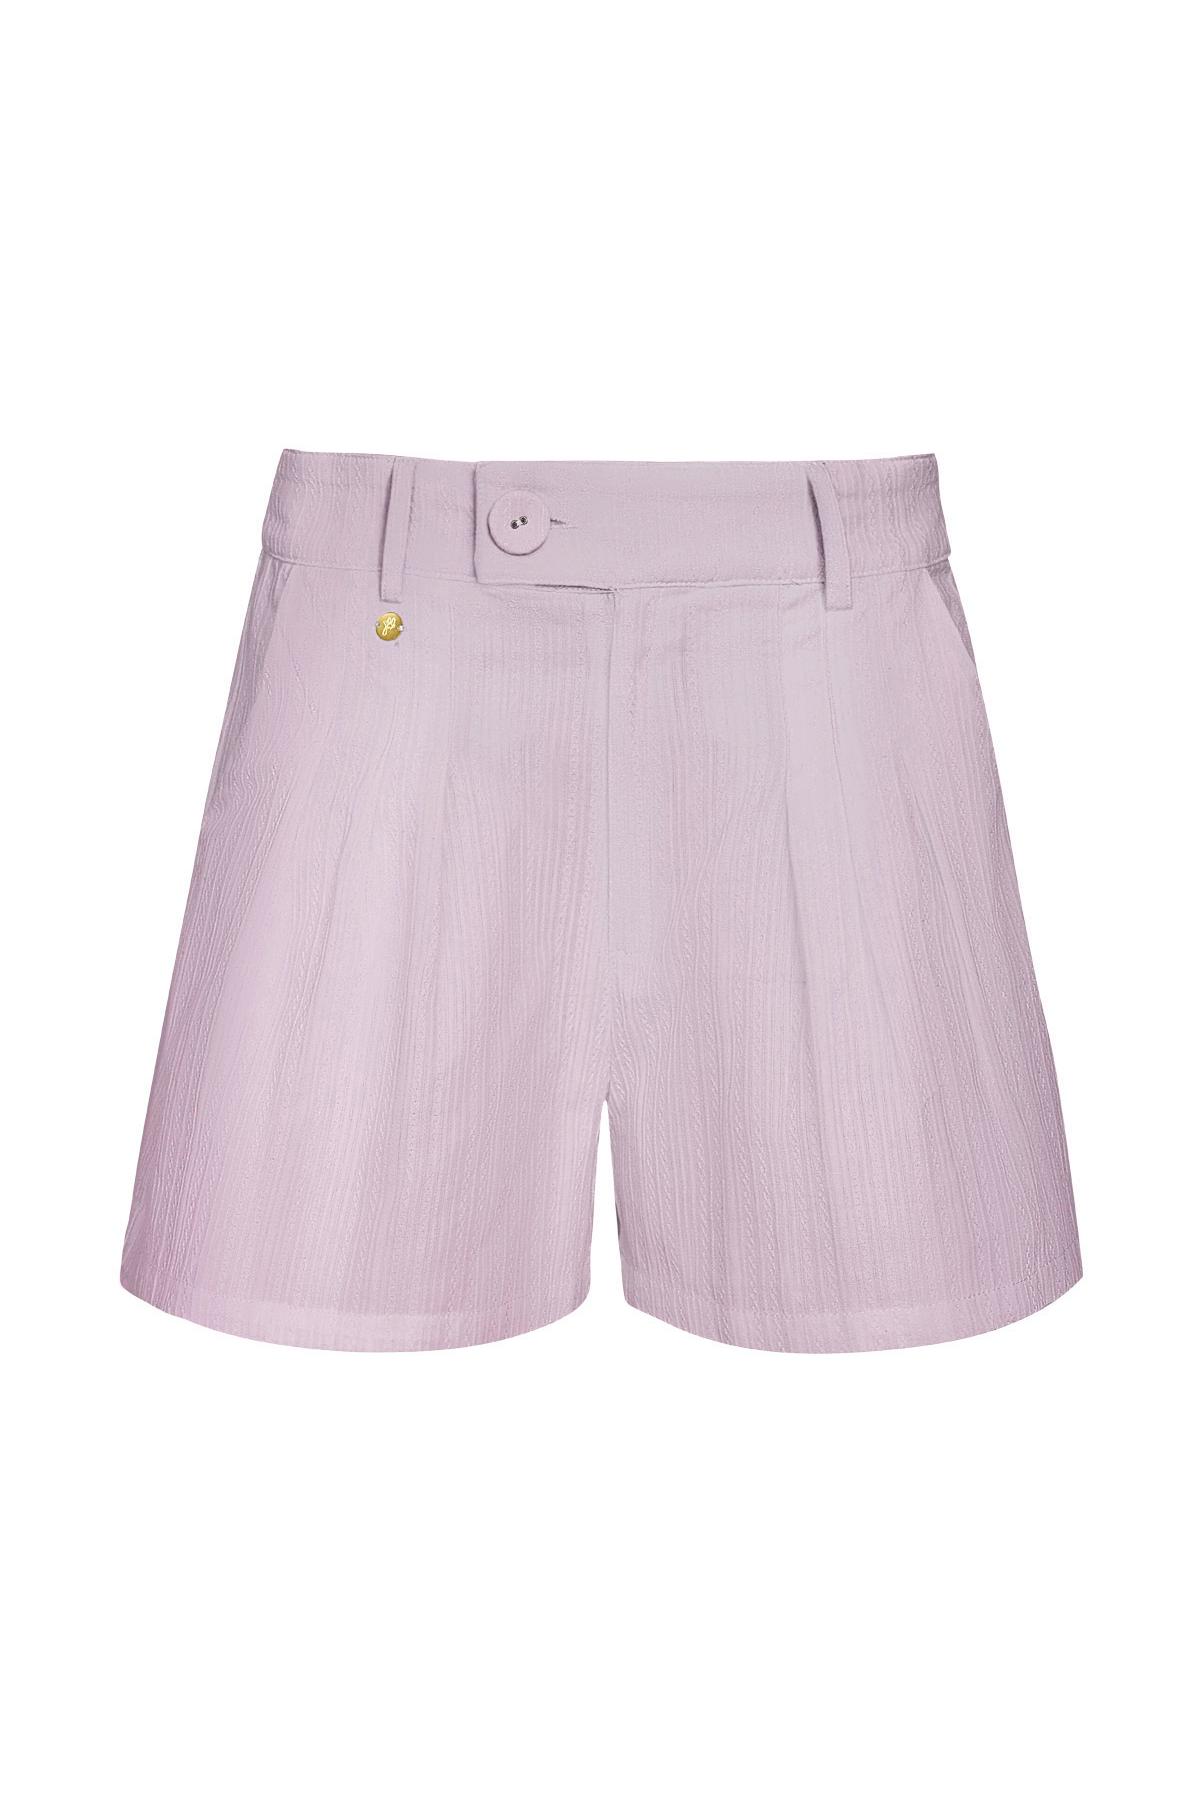 Dettaglio bottoni pantaloncini - lilla Lilac S h5 